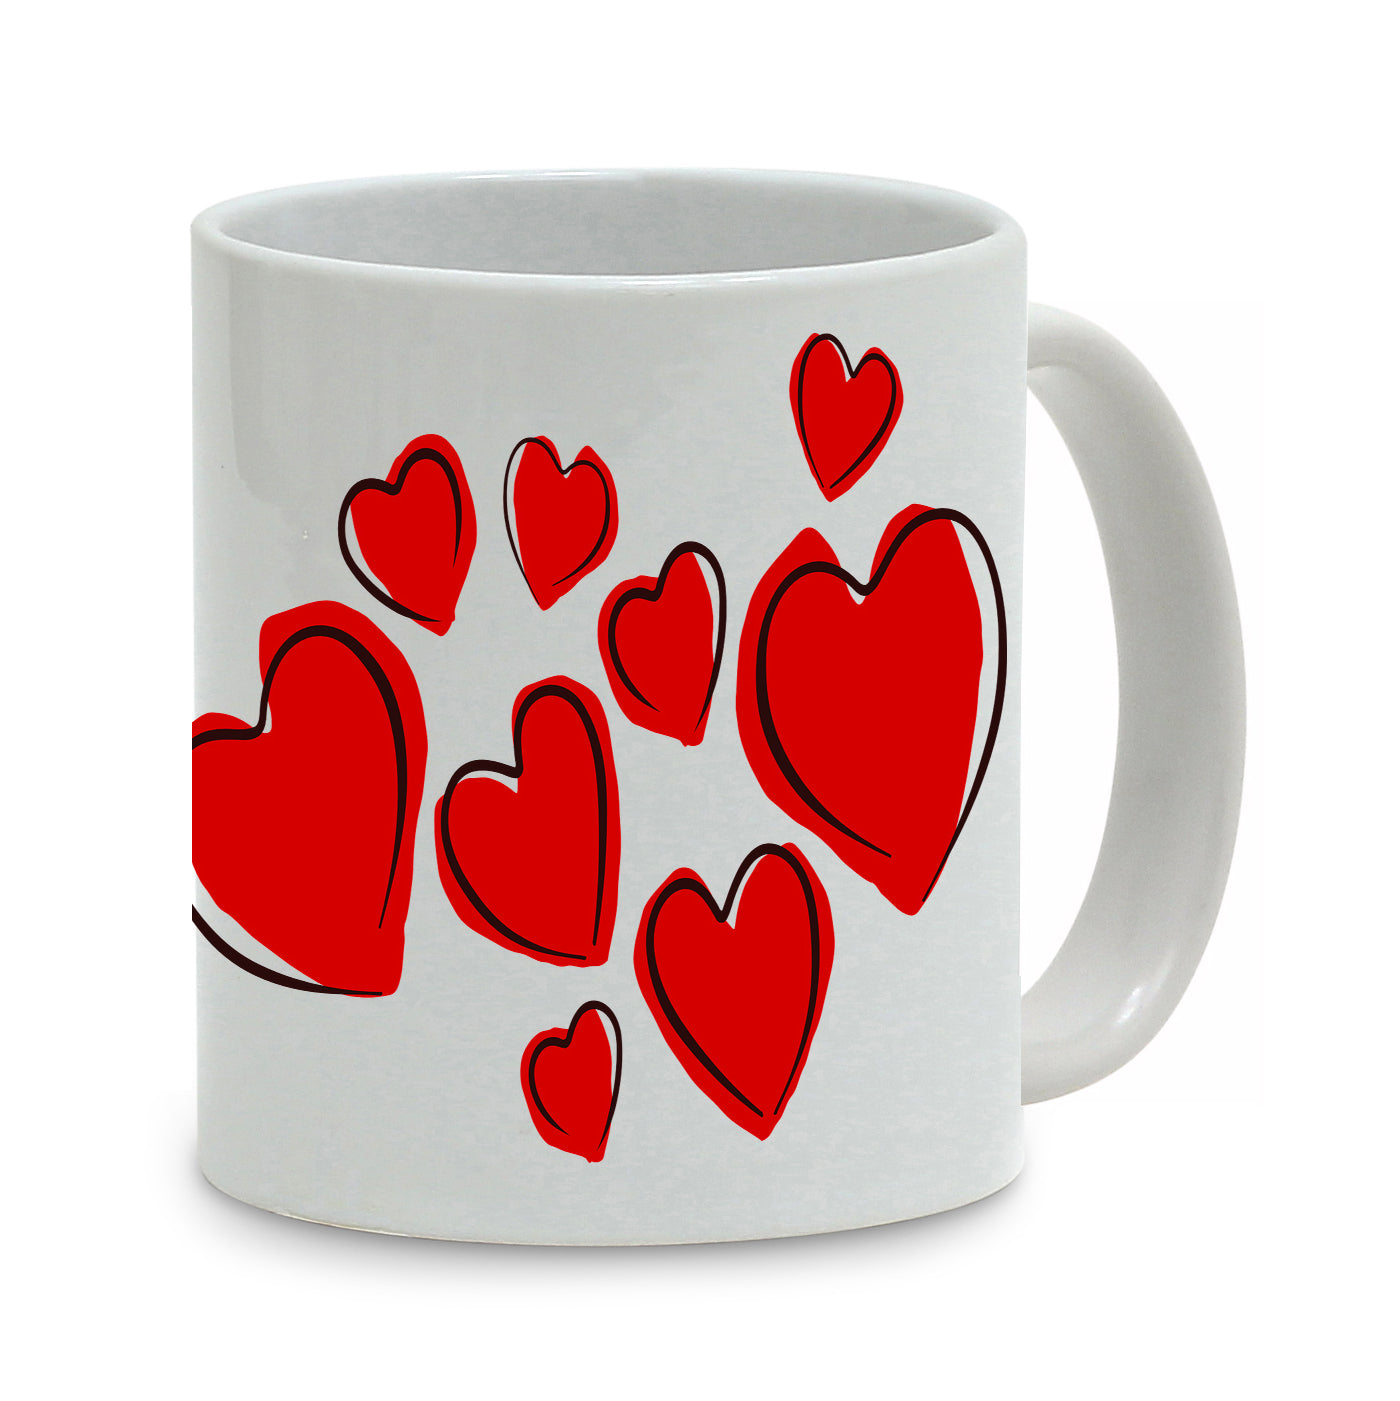 SUBLIMART: Love - Mug (Design 08)